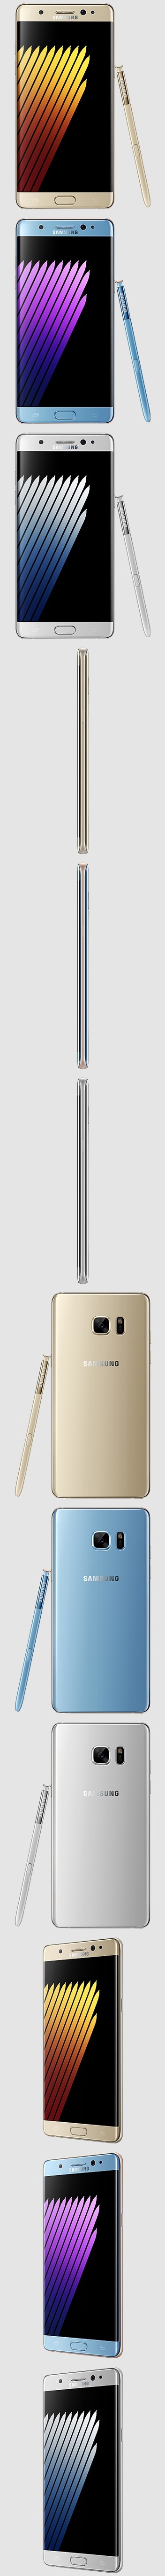 Samsung Galaxy Note 7. Официальные пресс-изображения смартфона просочились в Сеть